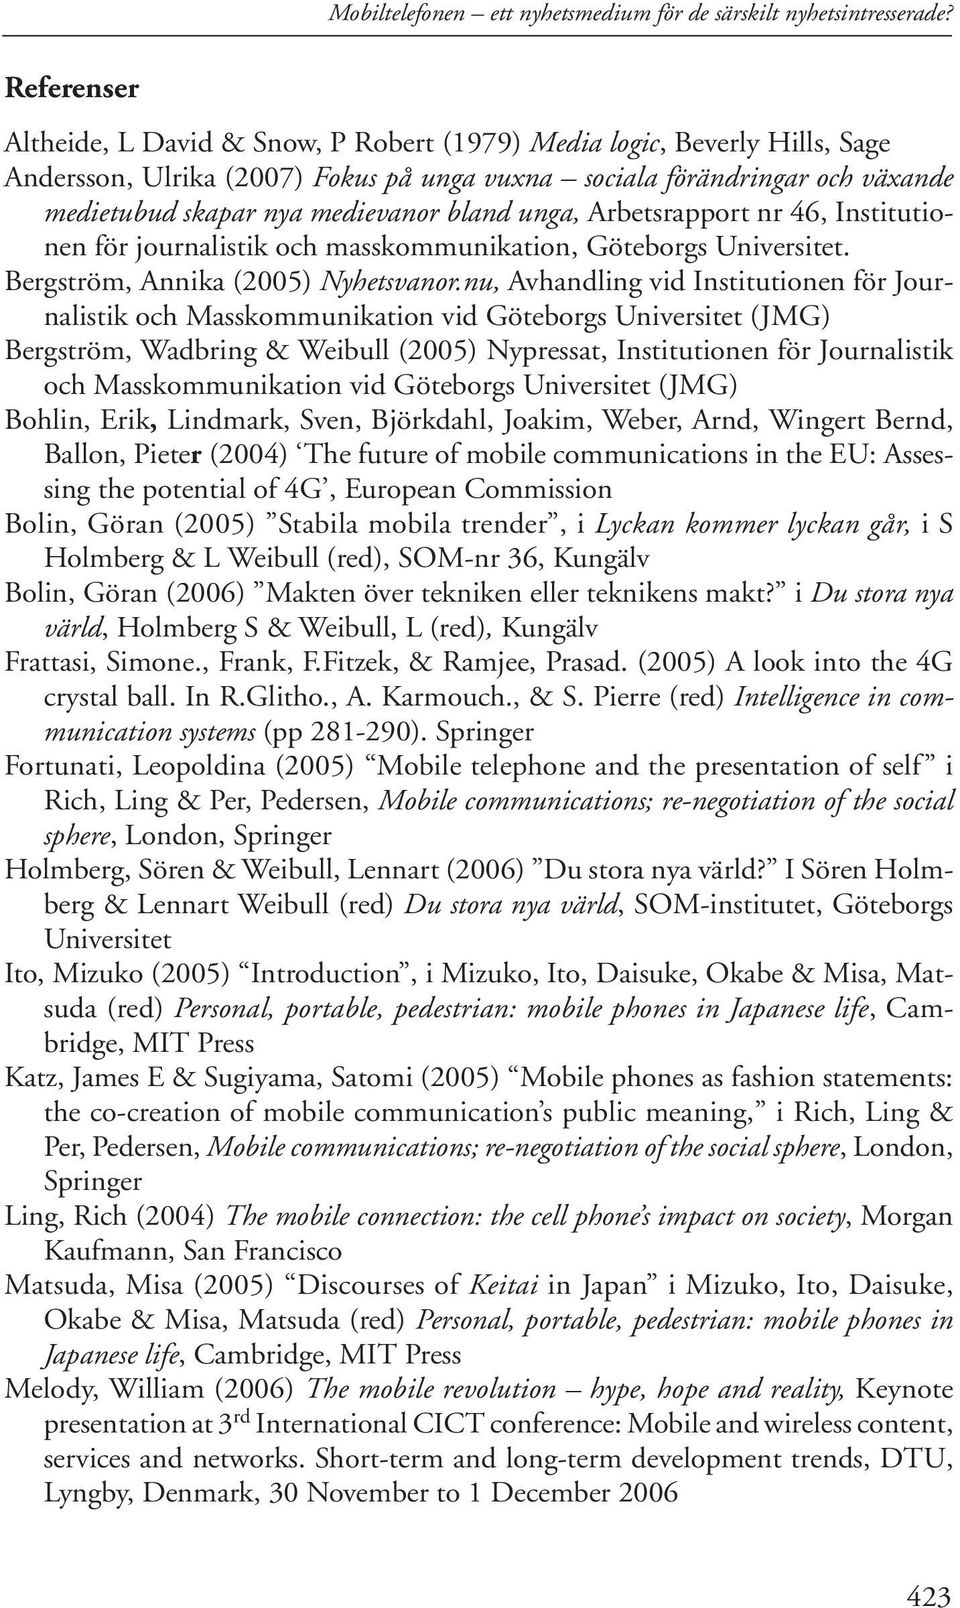 bland unga, Arbetsrapport nr 46, Institutionen för journalistik och masskommunikation, Göteborgs Universitet. Bergström, Annika (2005) Nyhetsvanor.